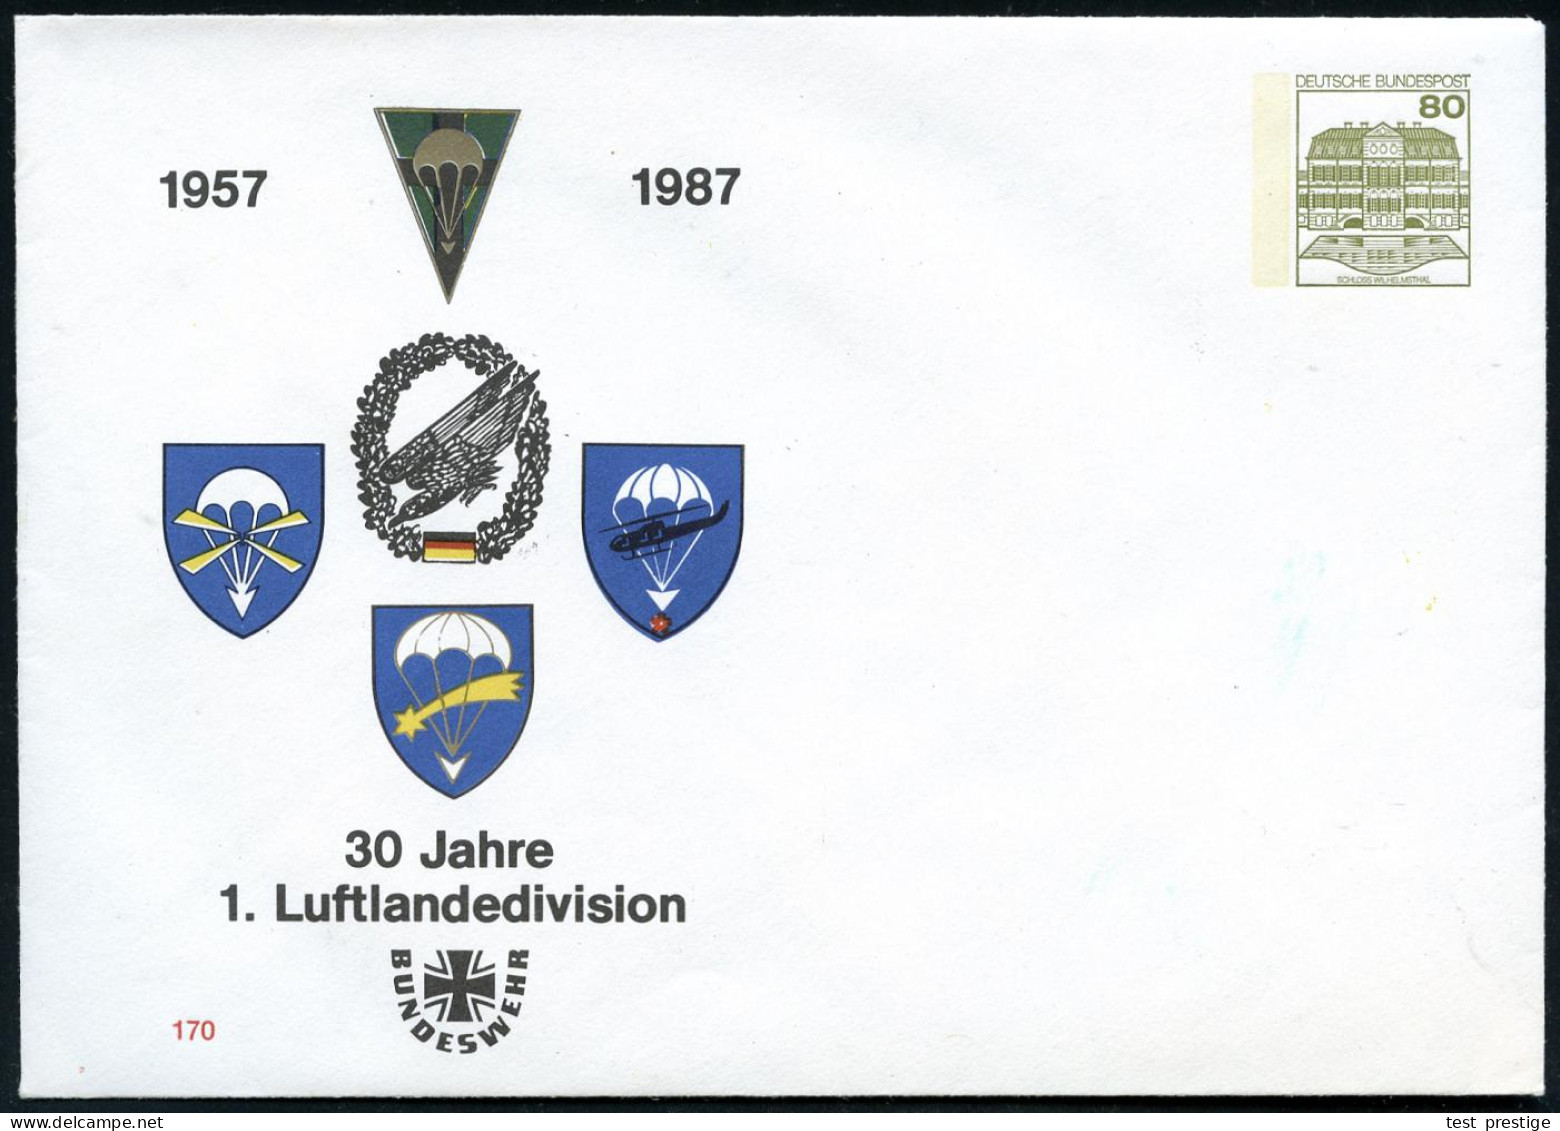 B.R.D. 1987 PU 80 Pf. Burgen, Oliv: 1957 1987, 30 Jahre 1. Luftlandedivision (Fallschirm-Abzeichen) Ungebr. - FALLSCHIRM - Fallschirmspringen